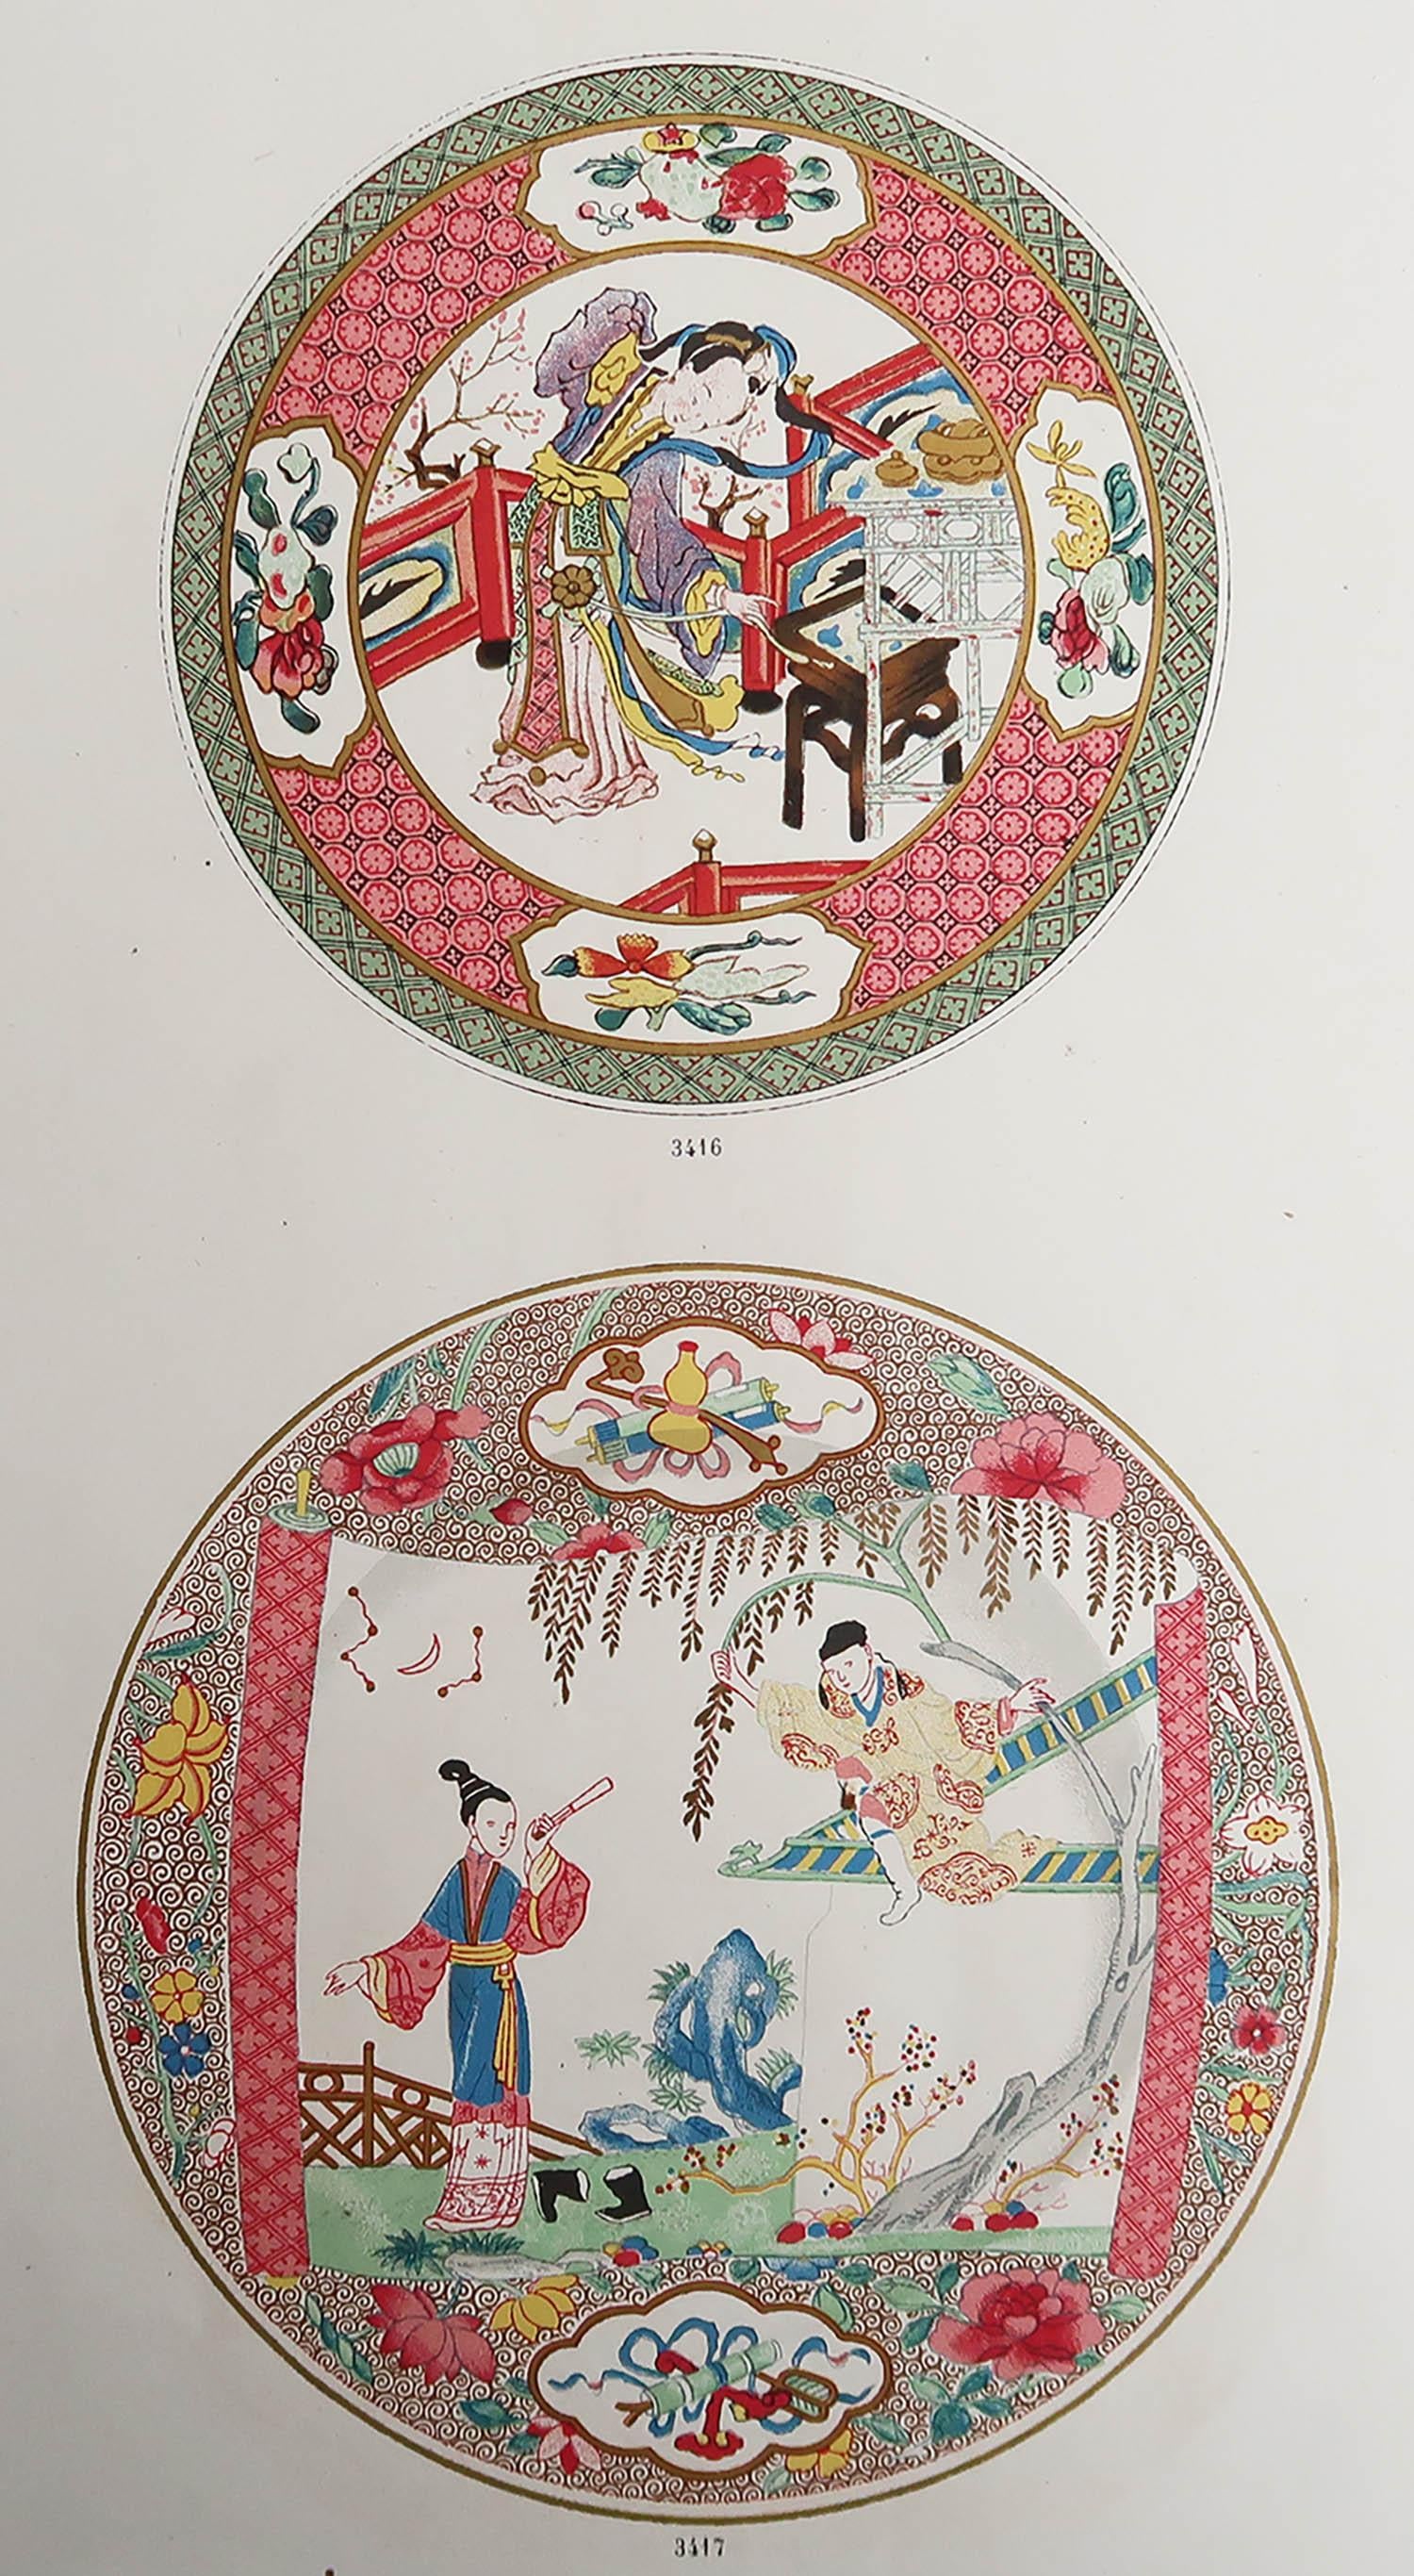 Magnifique impression d'une assiette chinoise et japonaise

Lithographie

Publié par A.Morel, Paris, France, vers 1860

Non encadré.








